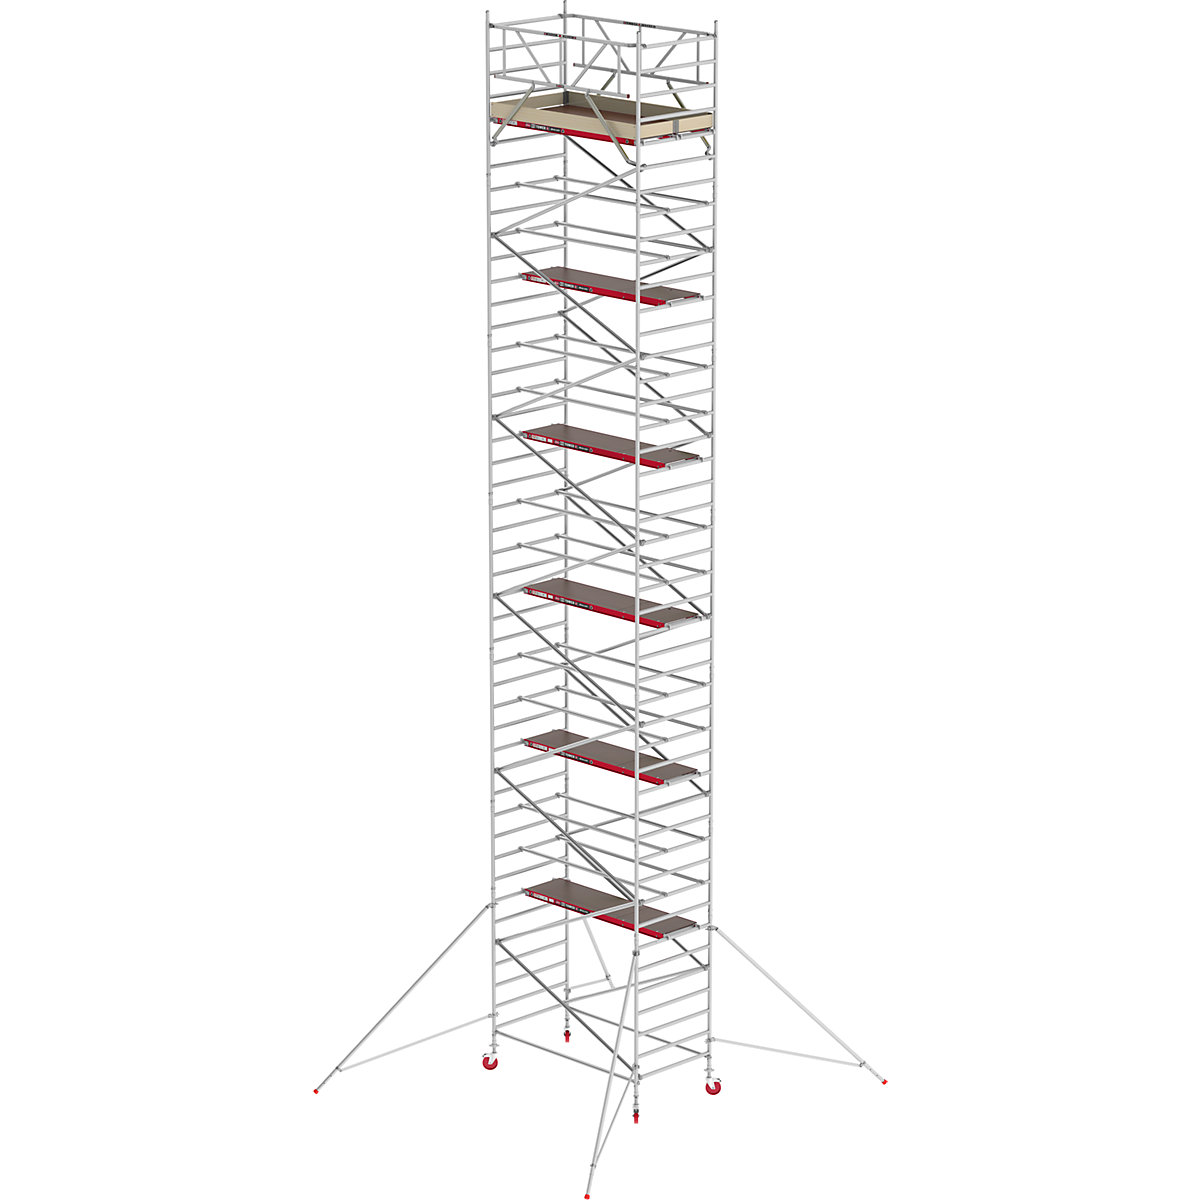 Trabattello mobile RS TOWER 42 largo – Altrex, piattaforma in legno, lunghezza 2,45 m, altezza di lavoro 14,20 m-10